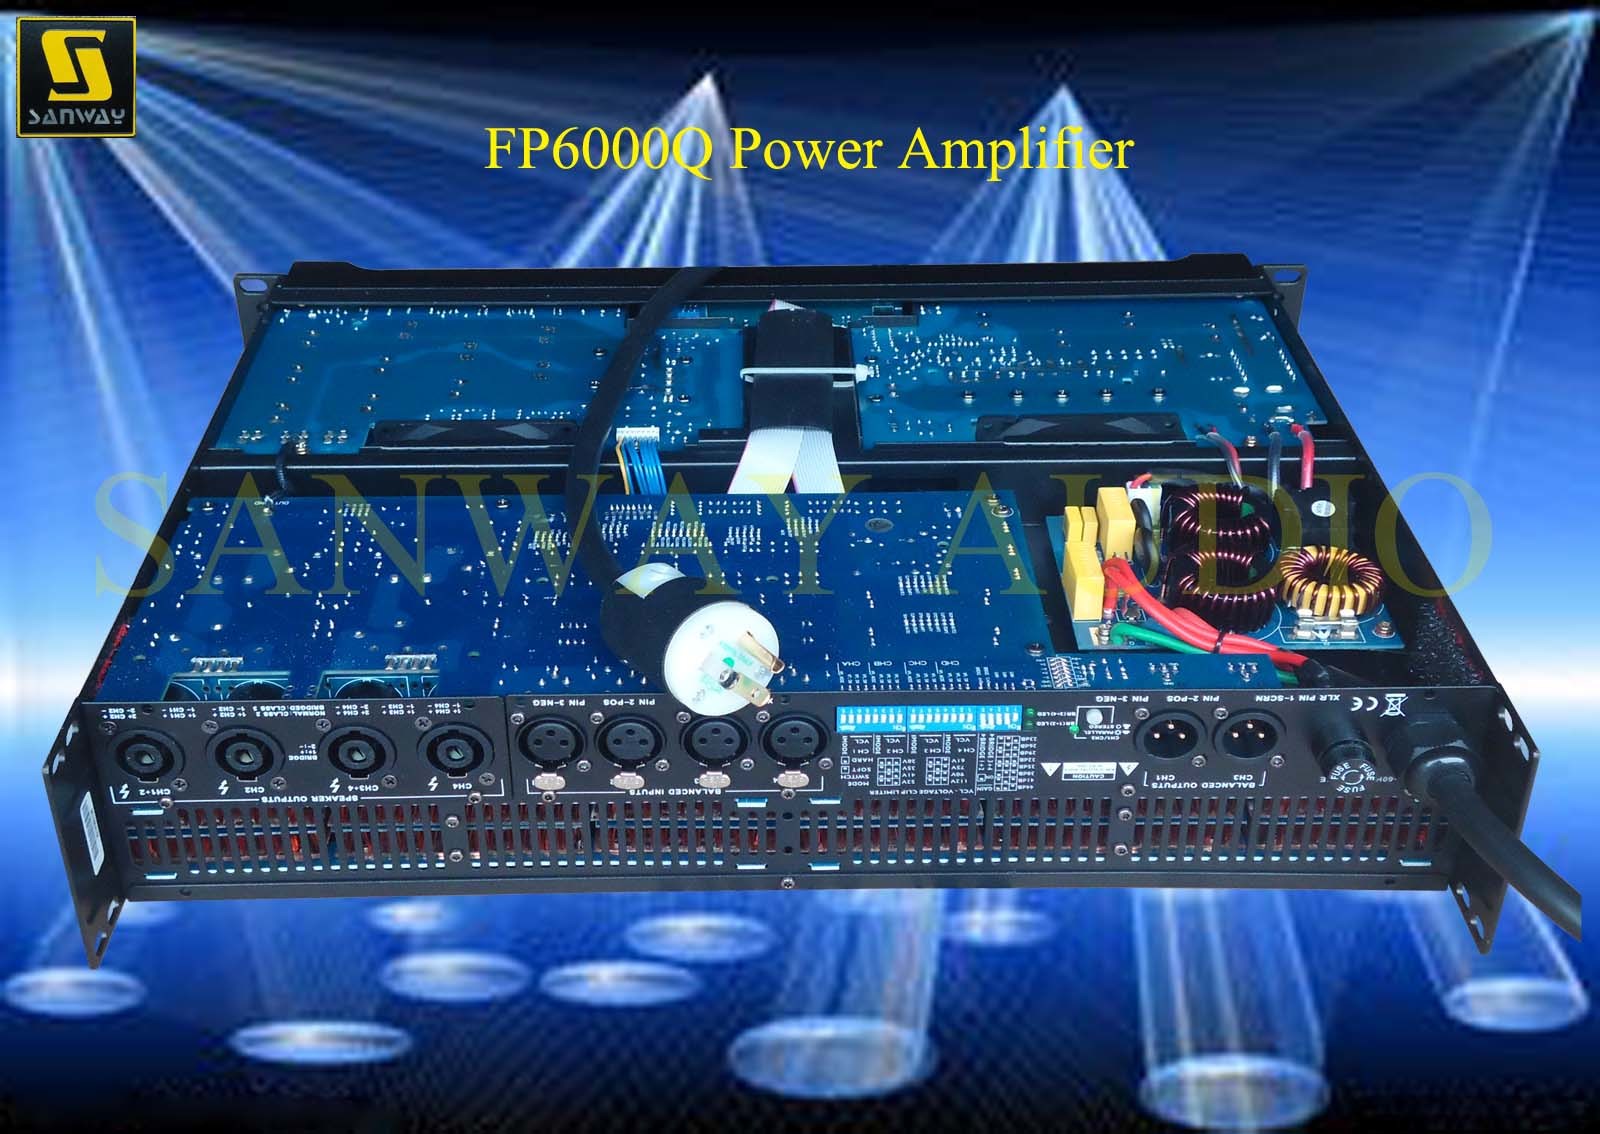 4 Channels Lower Power Amplifier (FP6000Q)